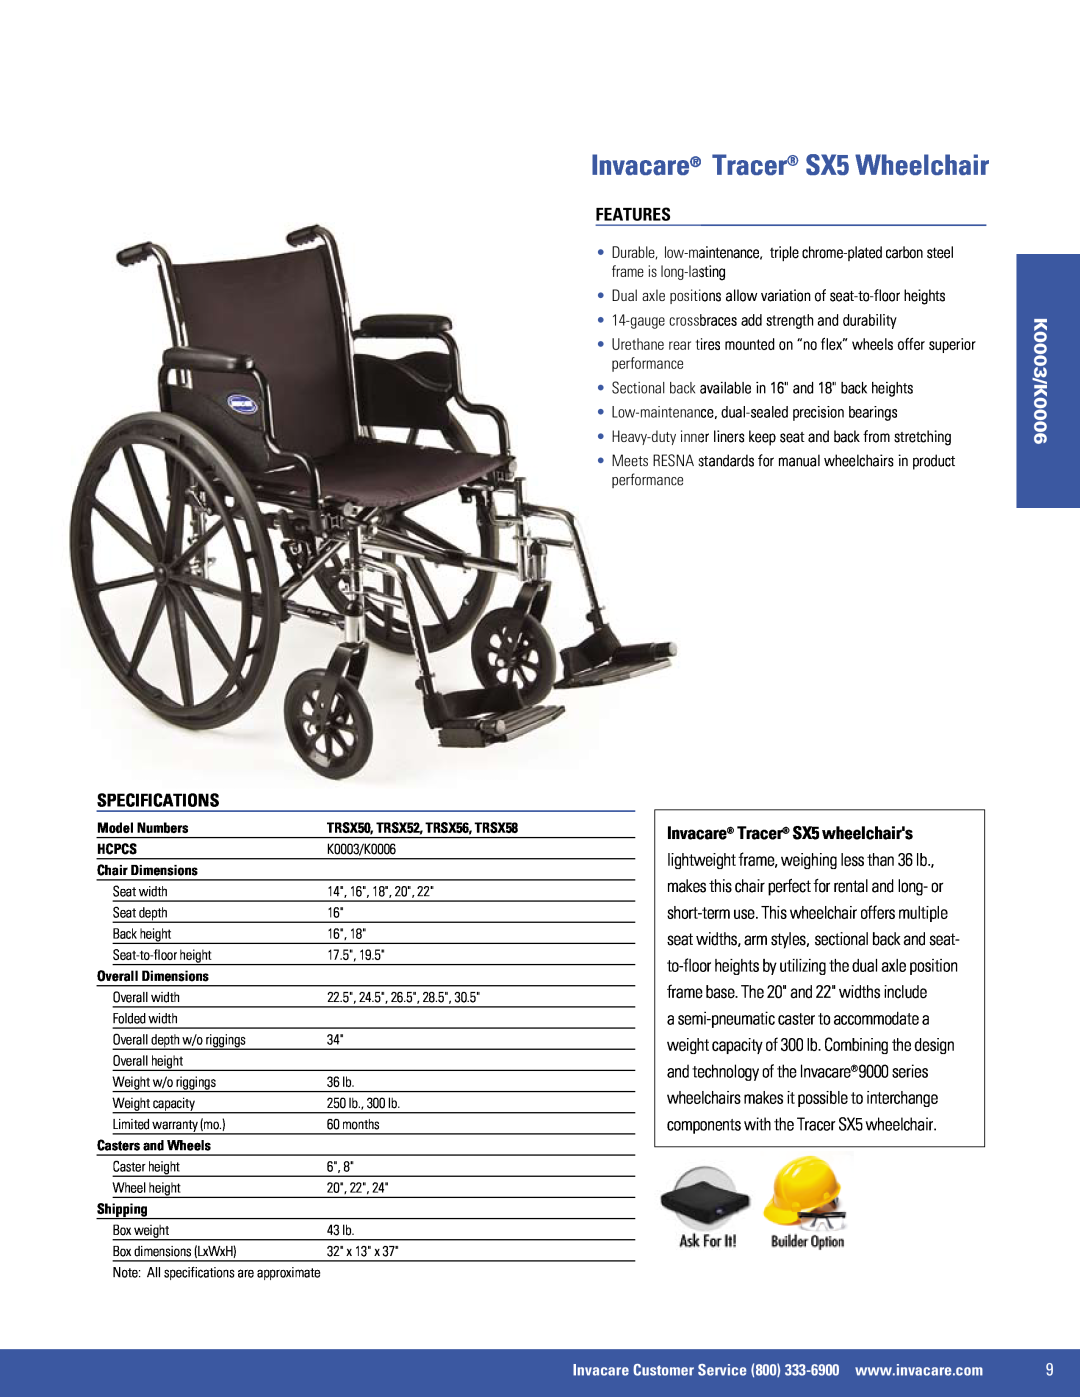 Invacare 9000 SL Invacare Tracer SX5 Wheelchair, Features, Specifications, K0003/K0006, Invacare Tracer SX5 wheelchairs 